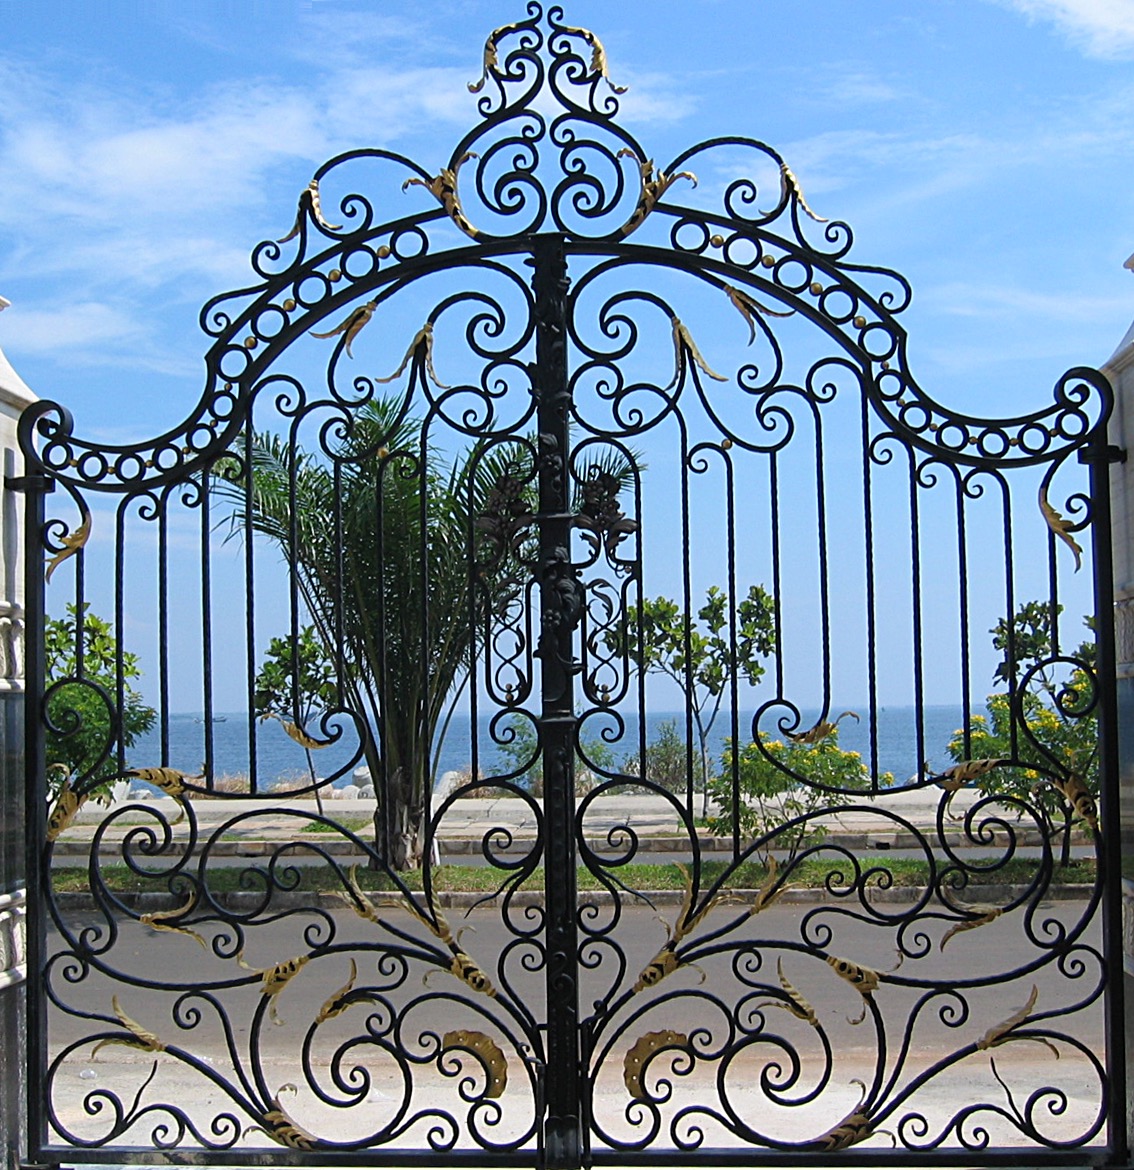 Artistic Main Gate